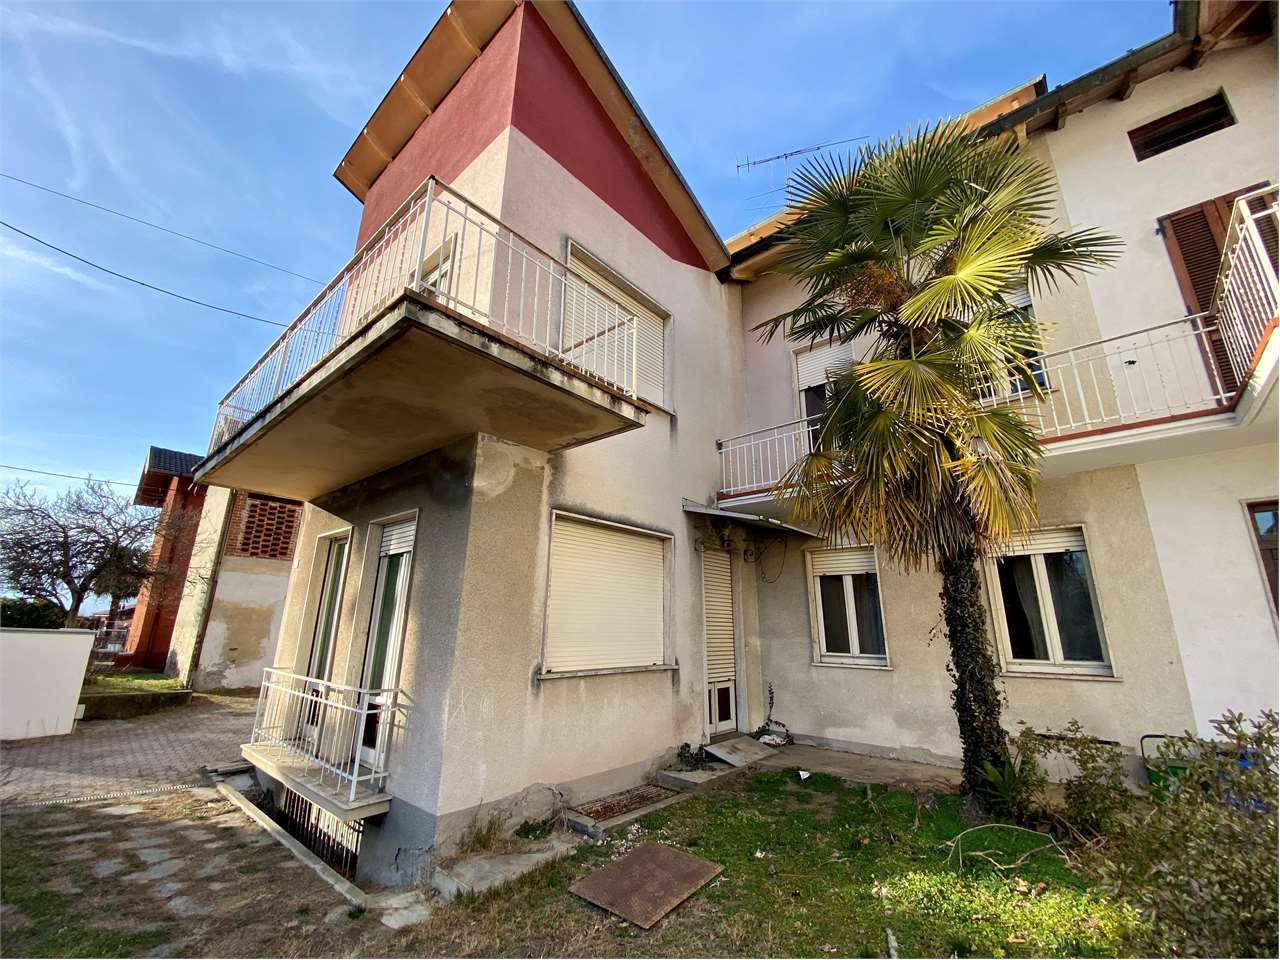 Appartamento in vendita a Monvalle, 3 locali, prezzo € 75.000 | PortaleAgenzieImmobiliari.it